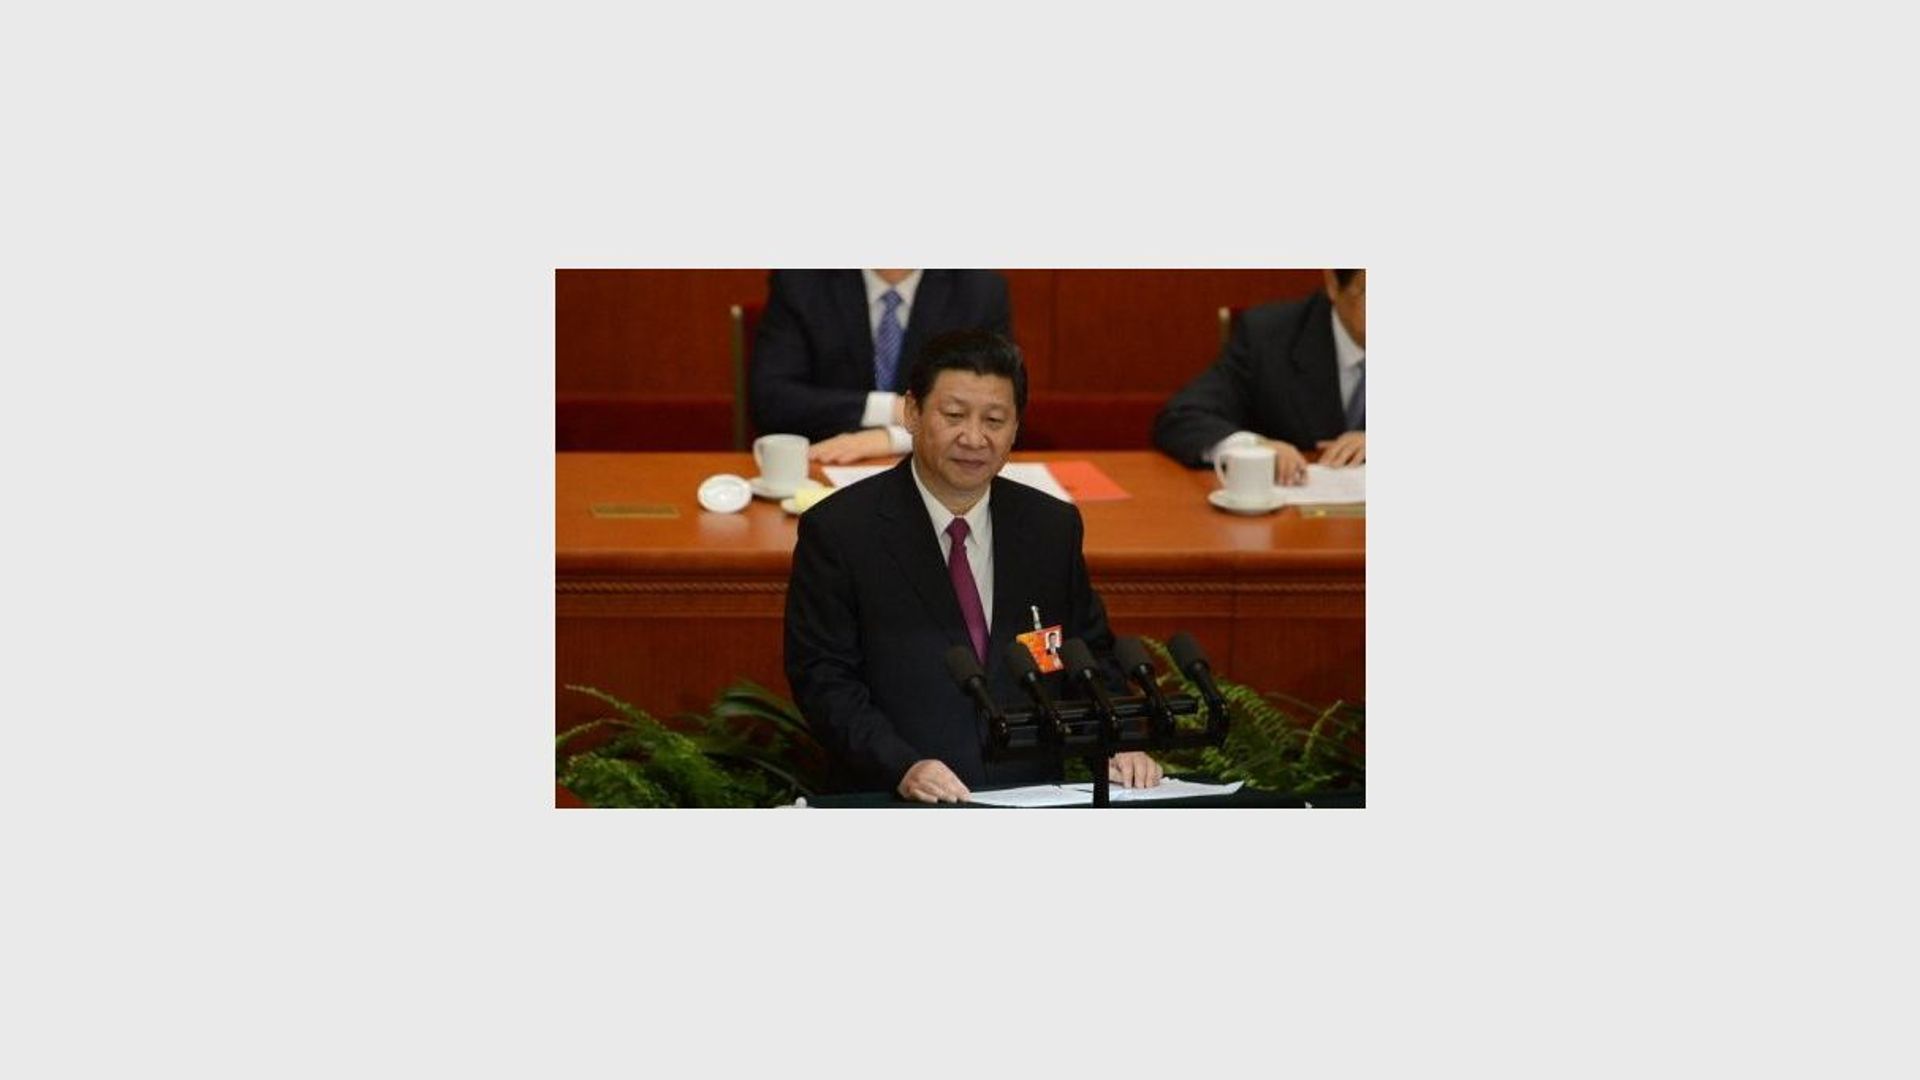 Discours du nouveau président chinois Xi Jinping, le 17 mars 2013 à Pékin